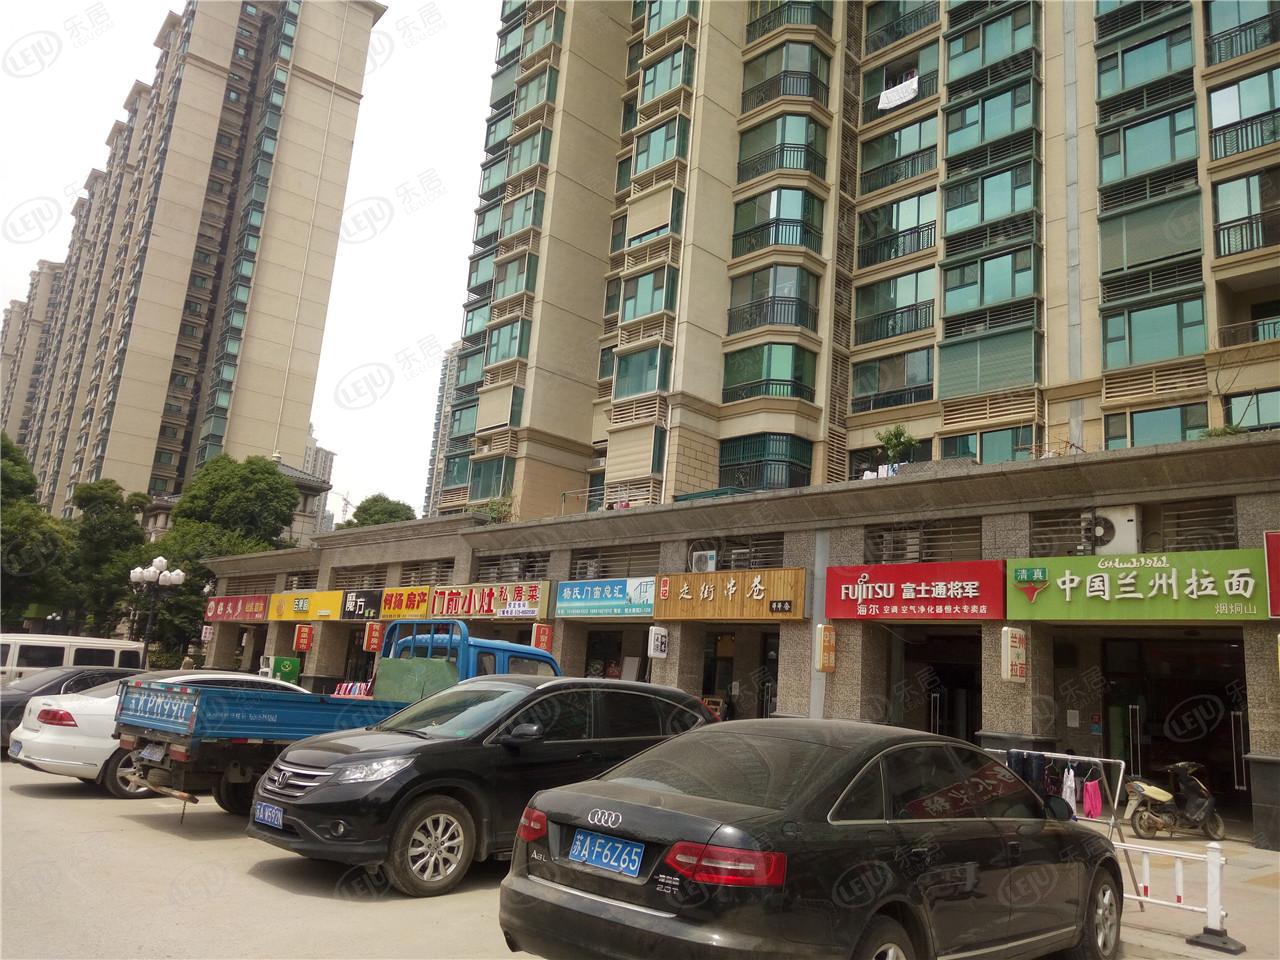 句容泰禾金尊府，位置在江苏省南京市仙林东路与和平路交汇处向南300米，预估价格在11500/平米左右。